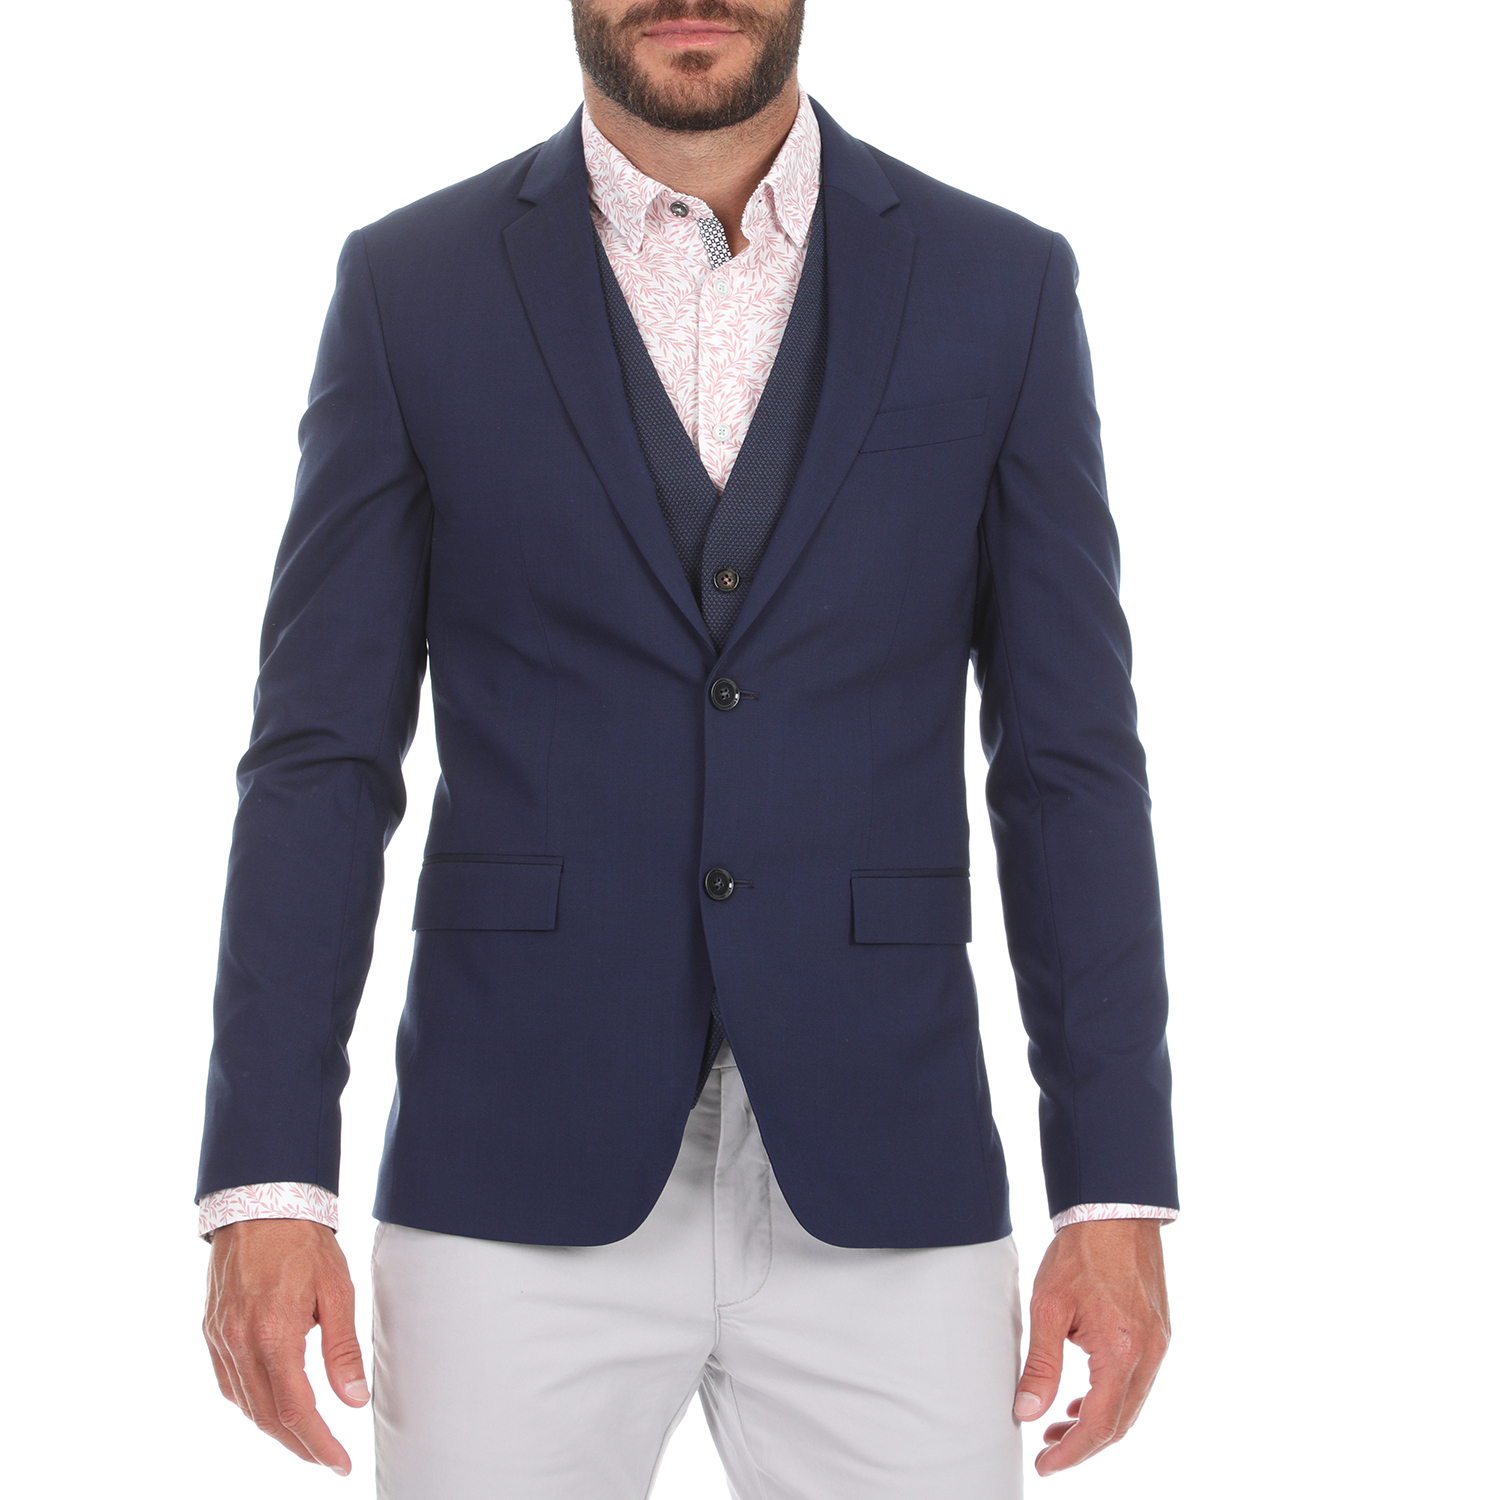 Ανδρικά/Ρούχα/Πανωφόρια/Σακάκια CK - Ανδρικό σακάκι CK STRETCH WOOL SLIM μπλε